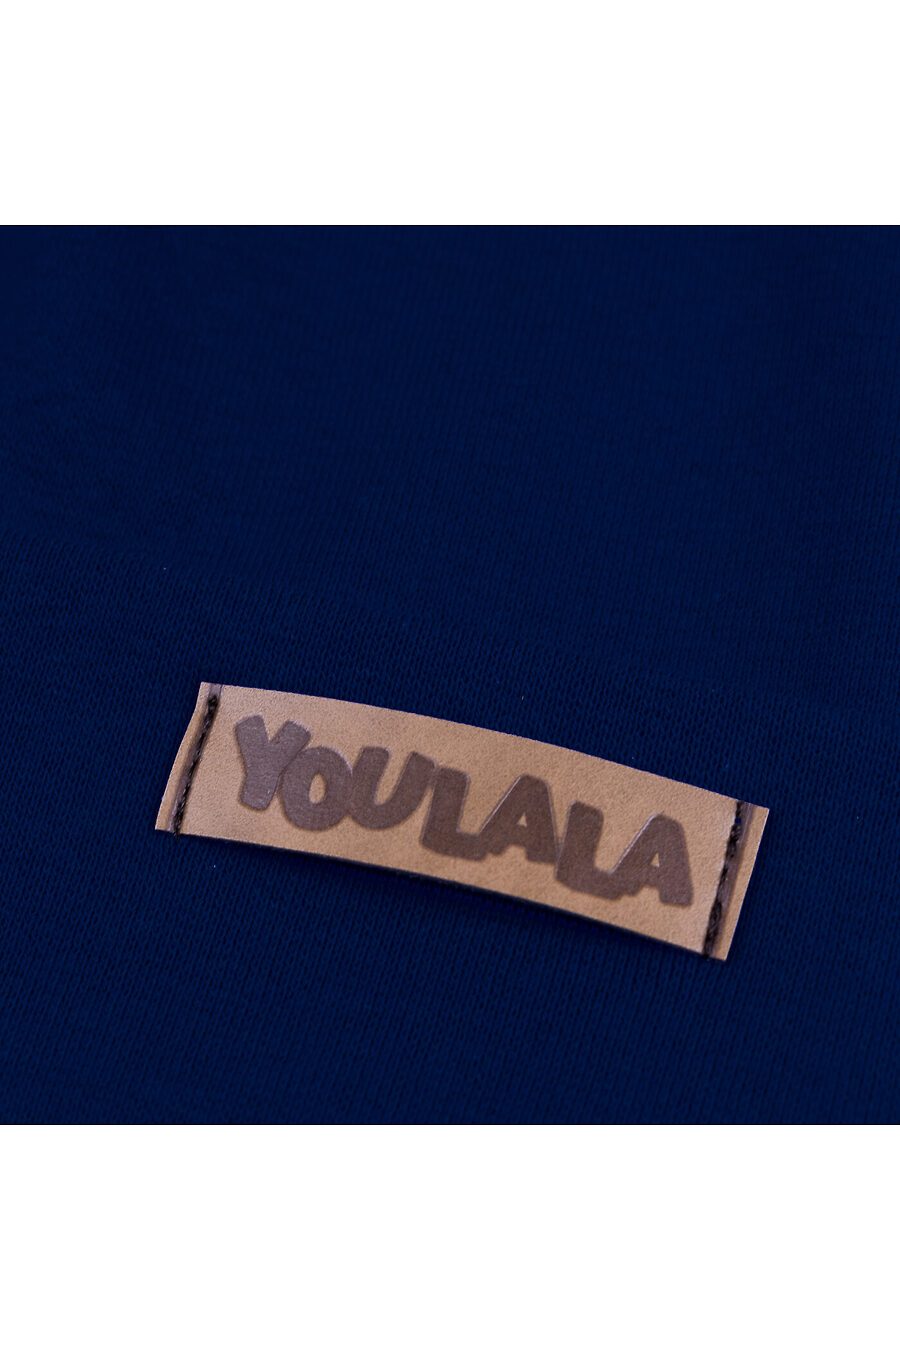 Шапка YOULALA (723300), купить в Moyo.moda